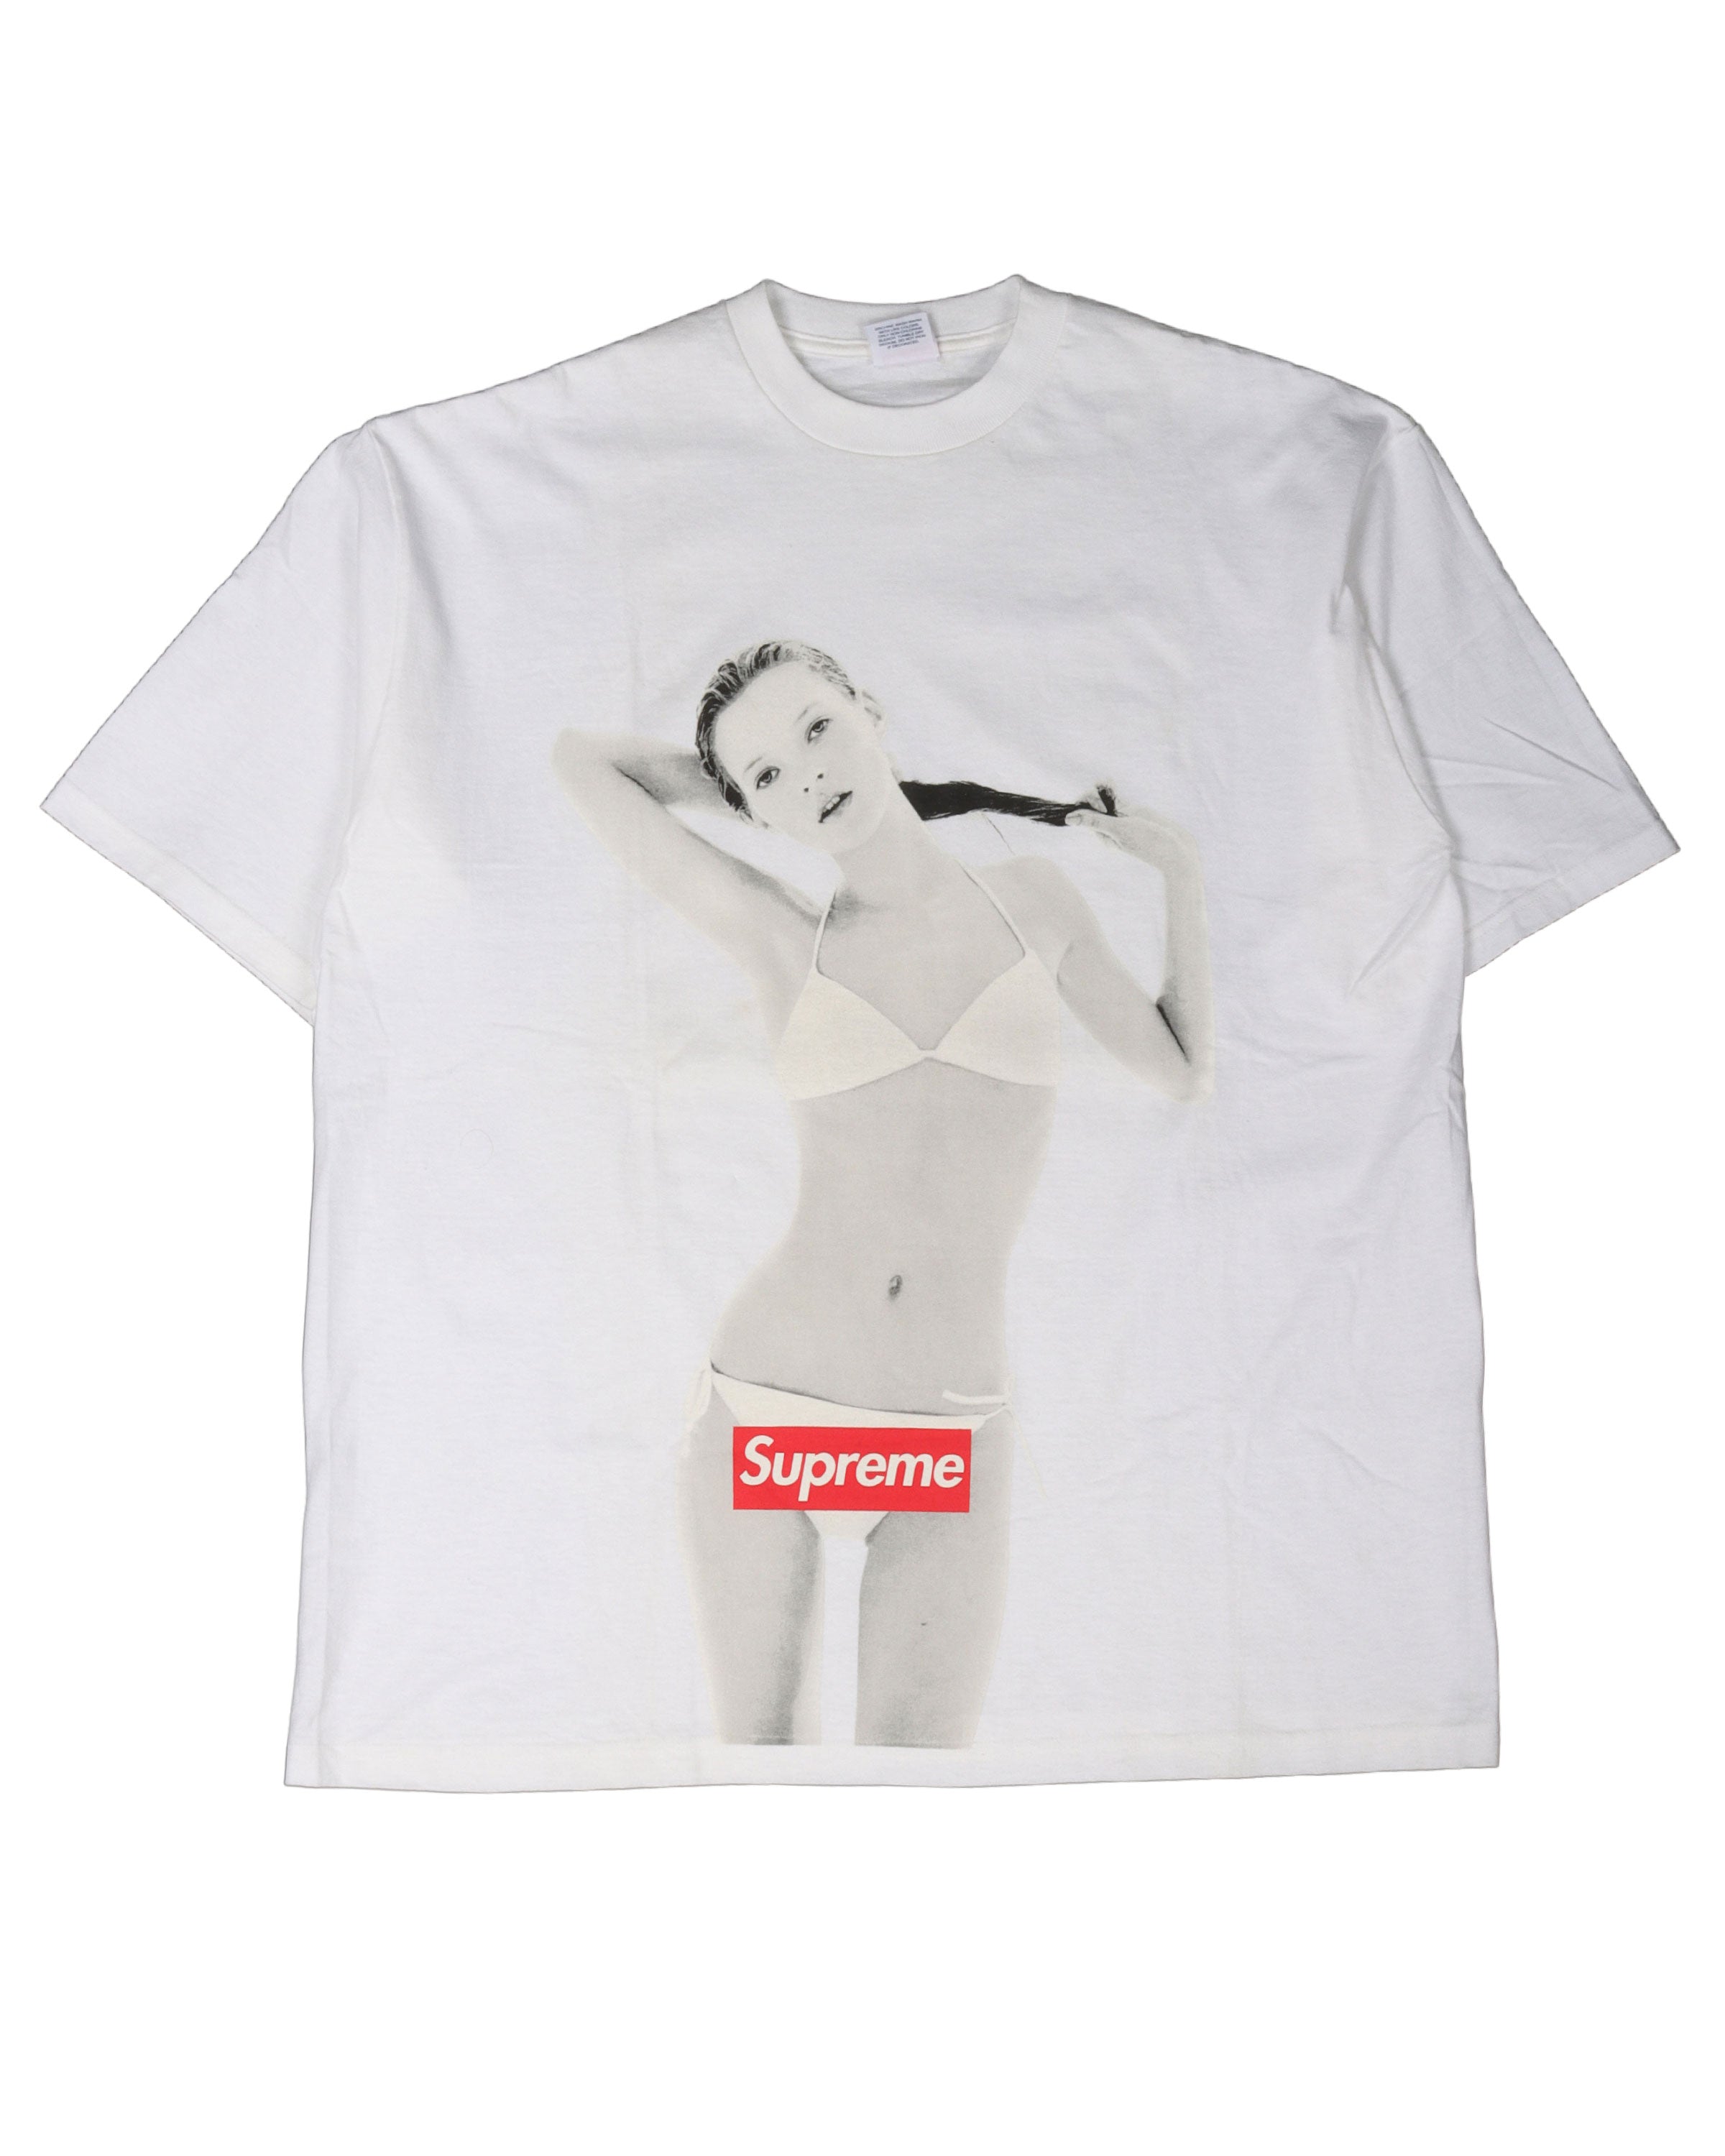 SS04 Kate Moss T-Shirt